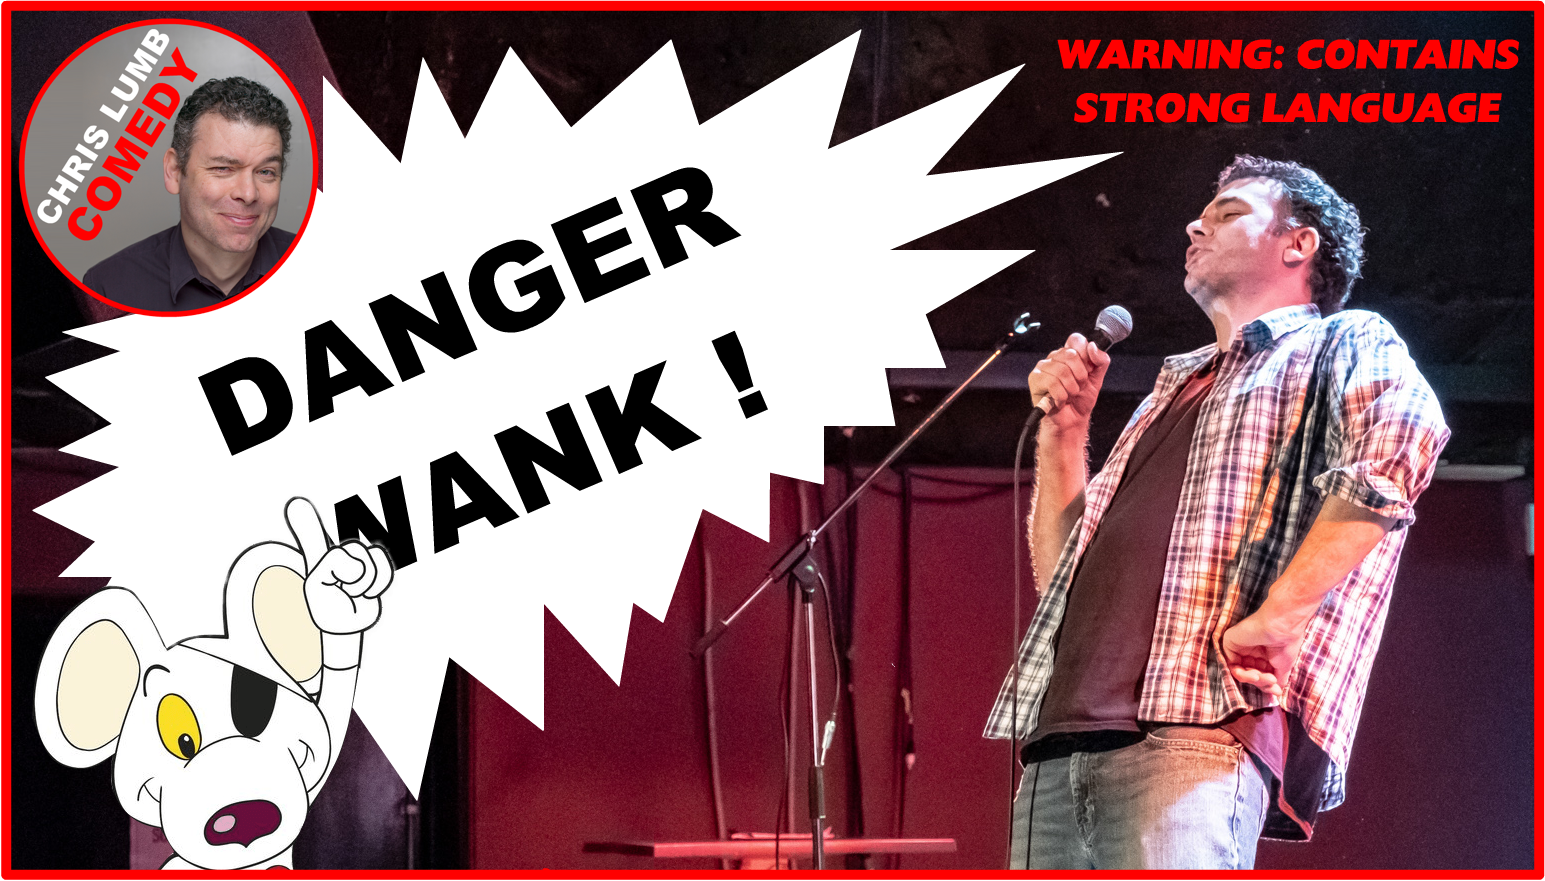 Chris Lumb Comedy "Danger Waxk"